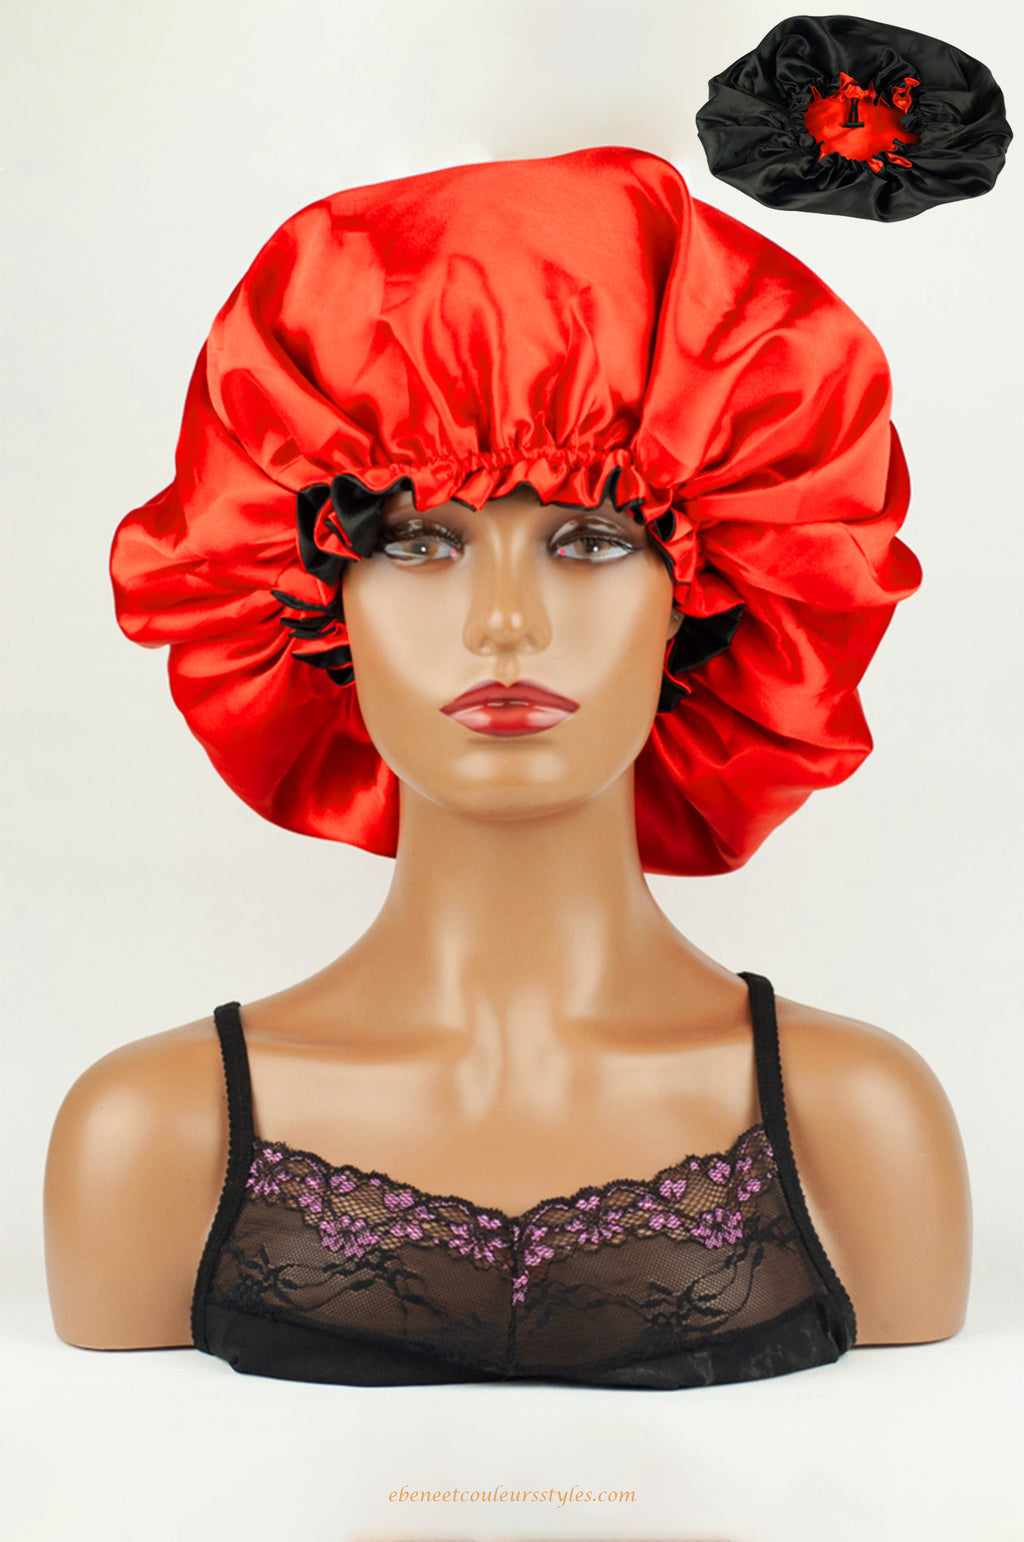 Ébène et couleurs styles- bonnet réversible à cordon réglable